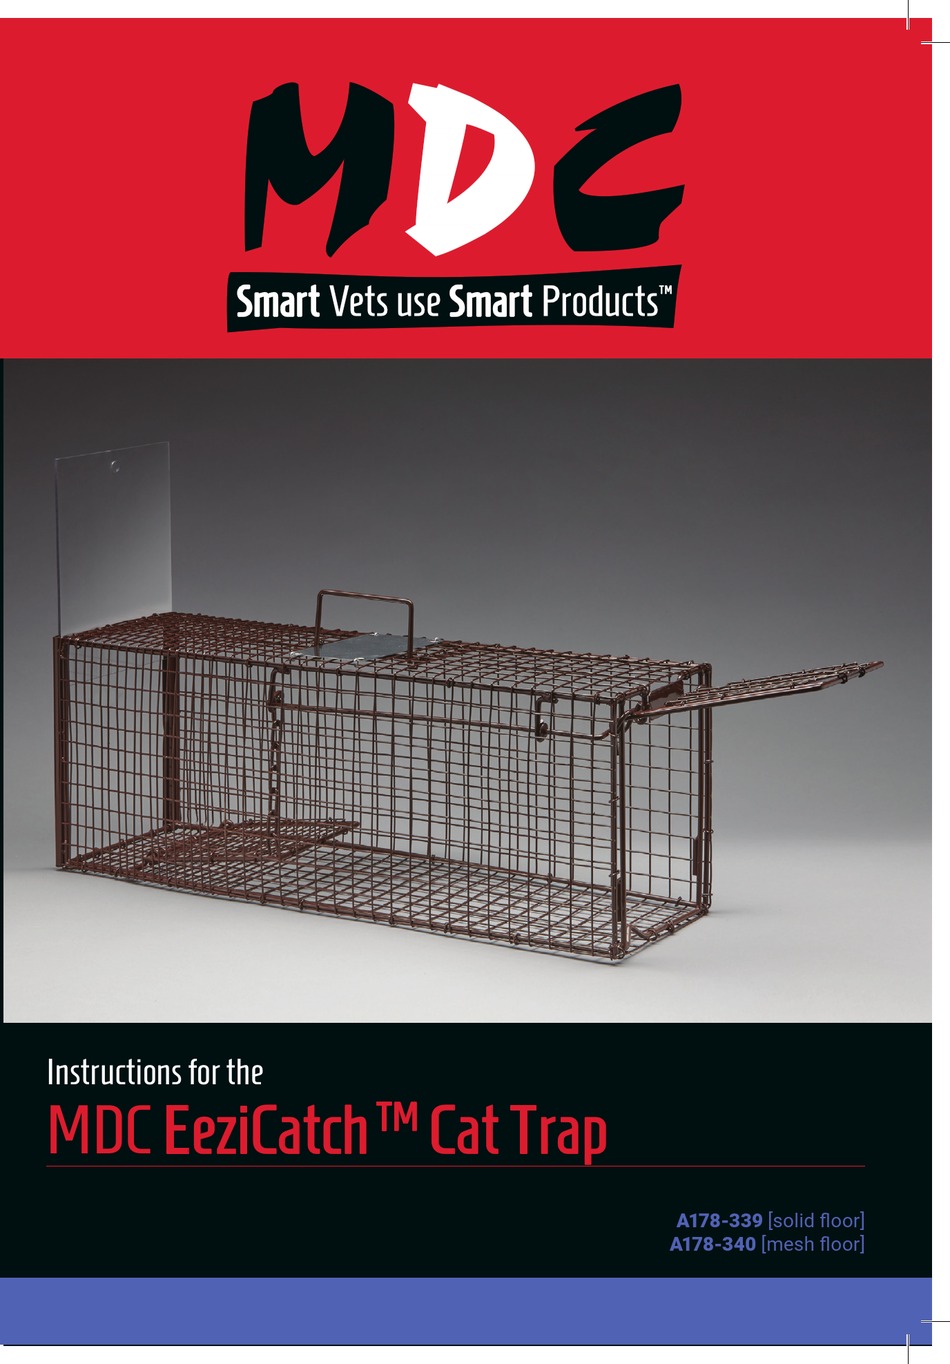 EeziCatch Cat Trap Solid Floor